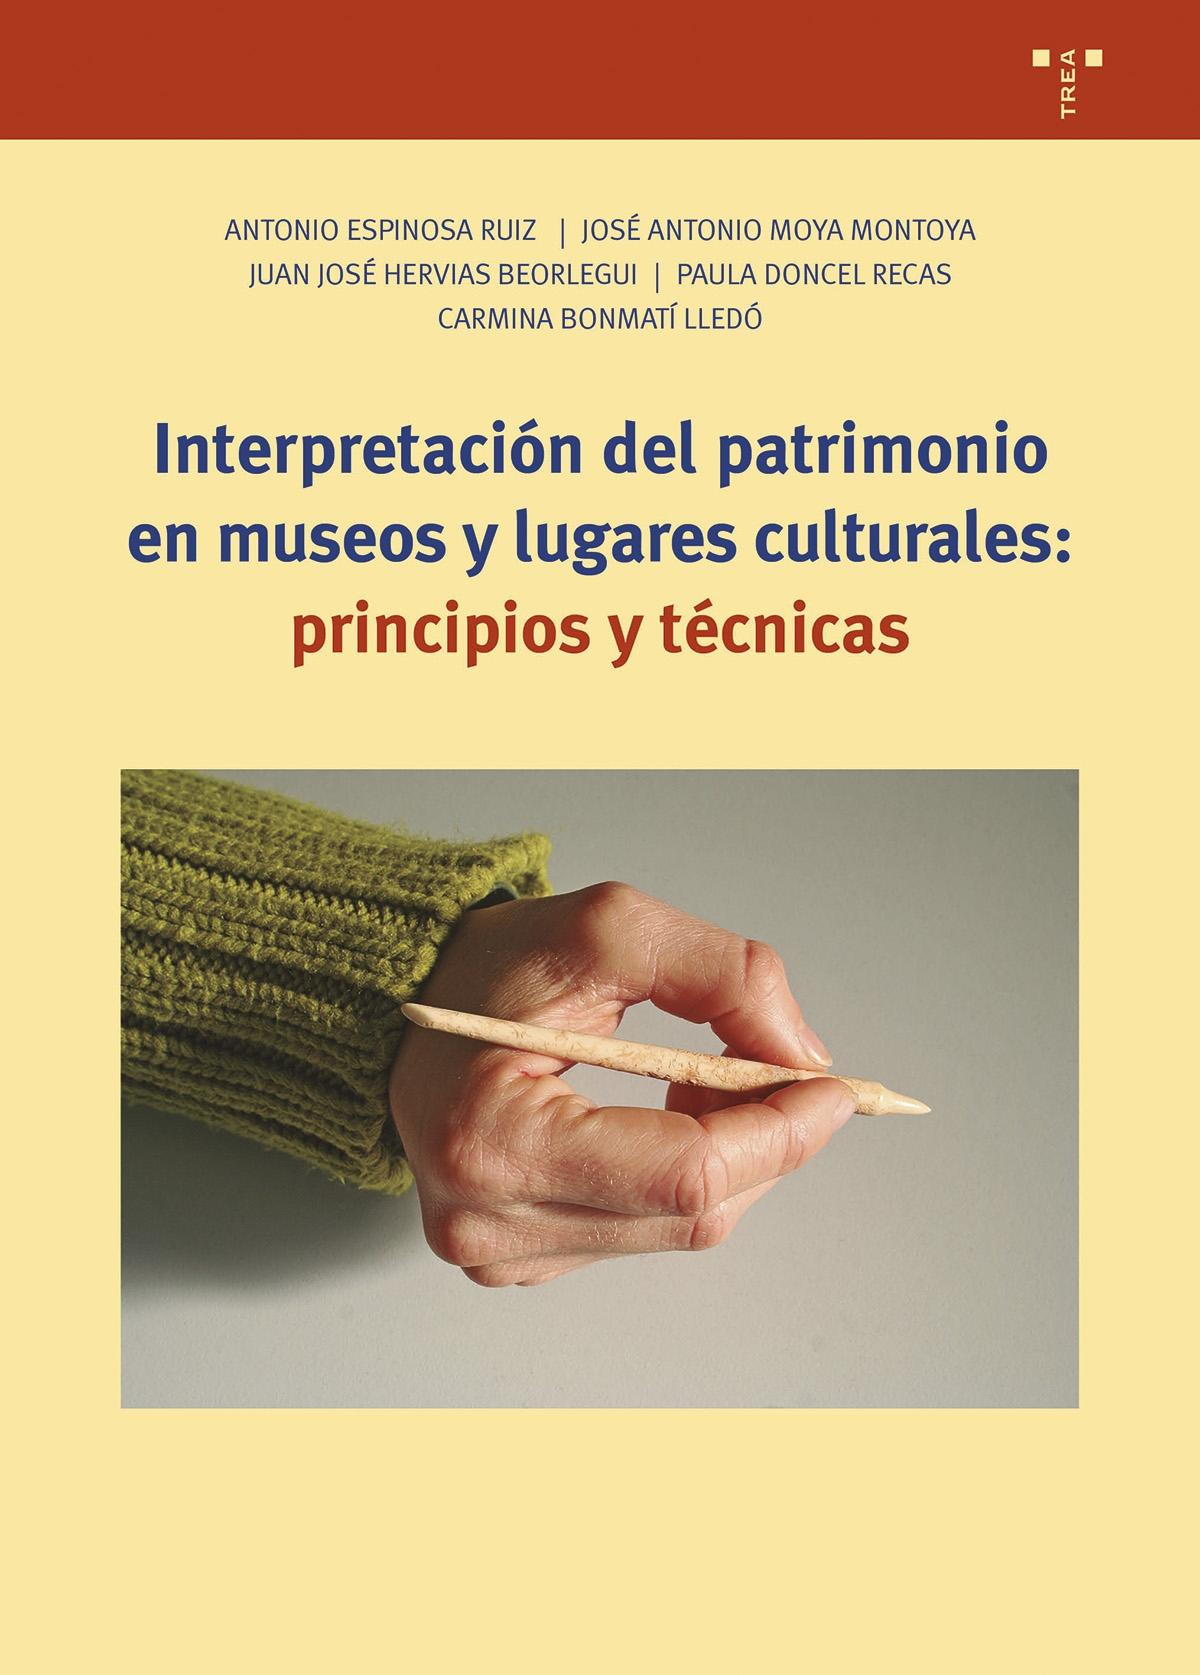 INTERPRETACION DEL PATRIMONIO EN MUSEOS Y LUGARES CULTURALES "PRINCIPIOS Y TECNICAS". 